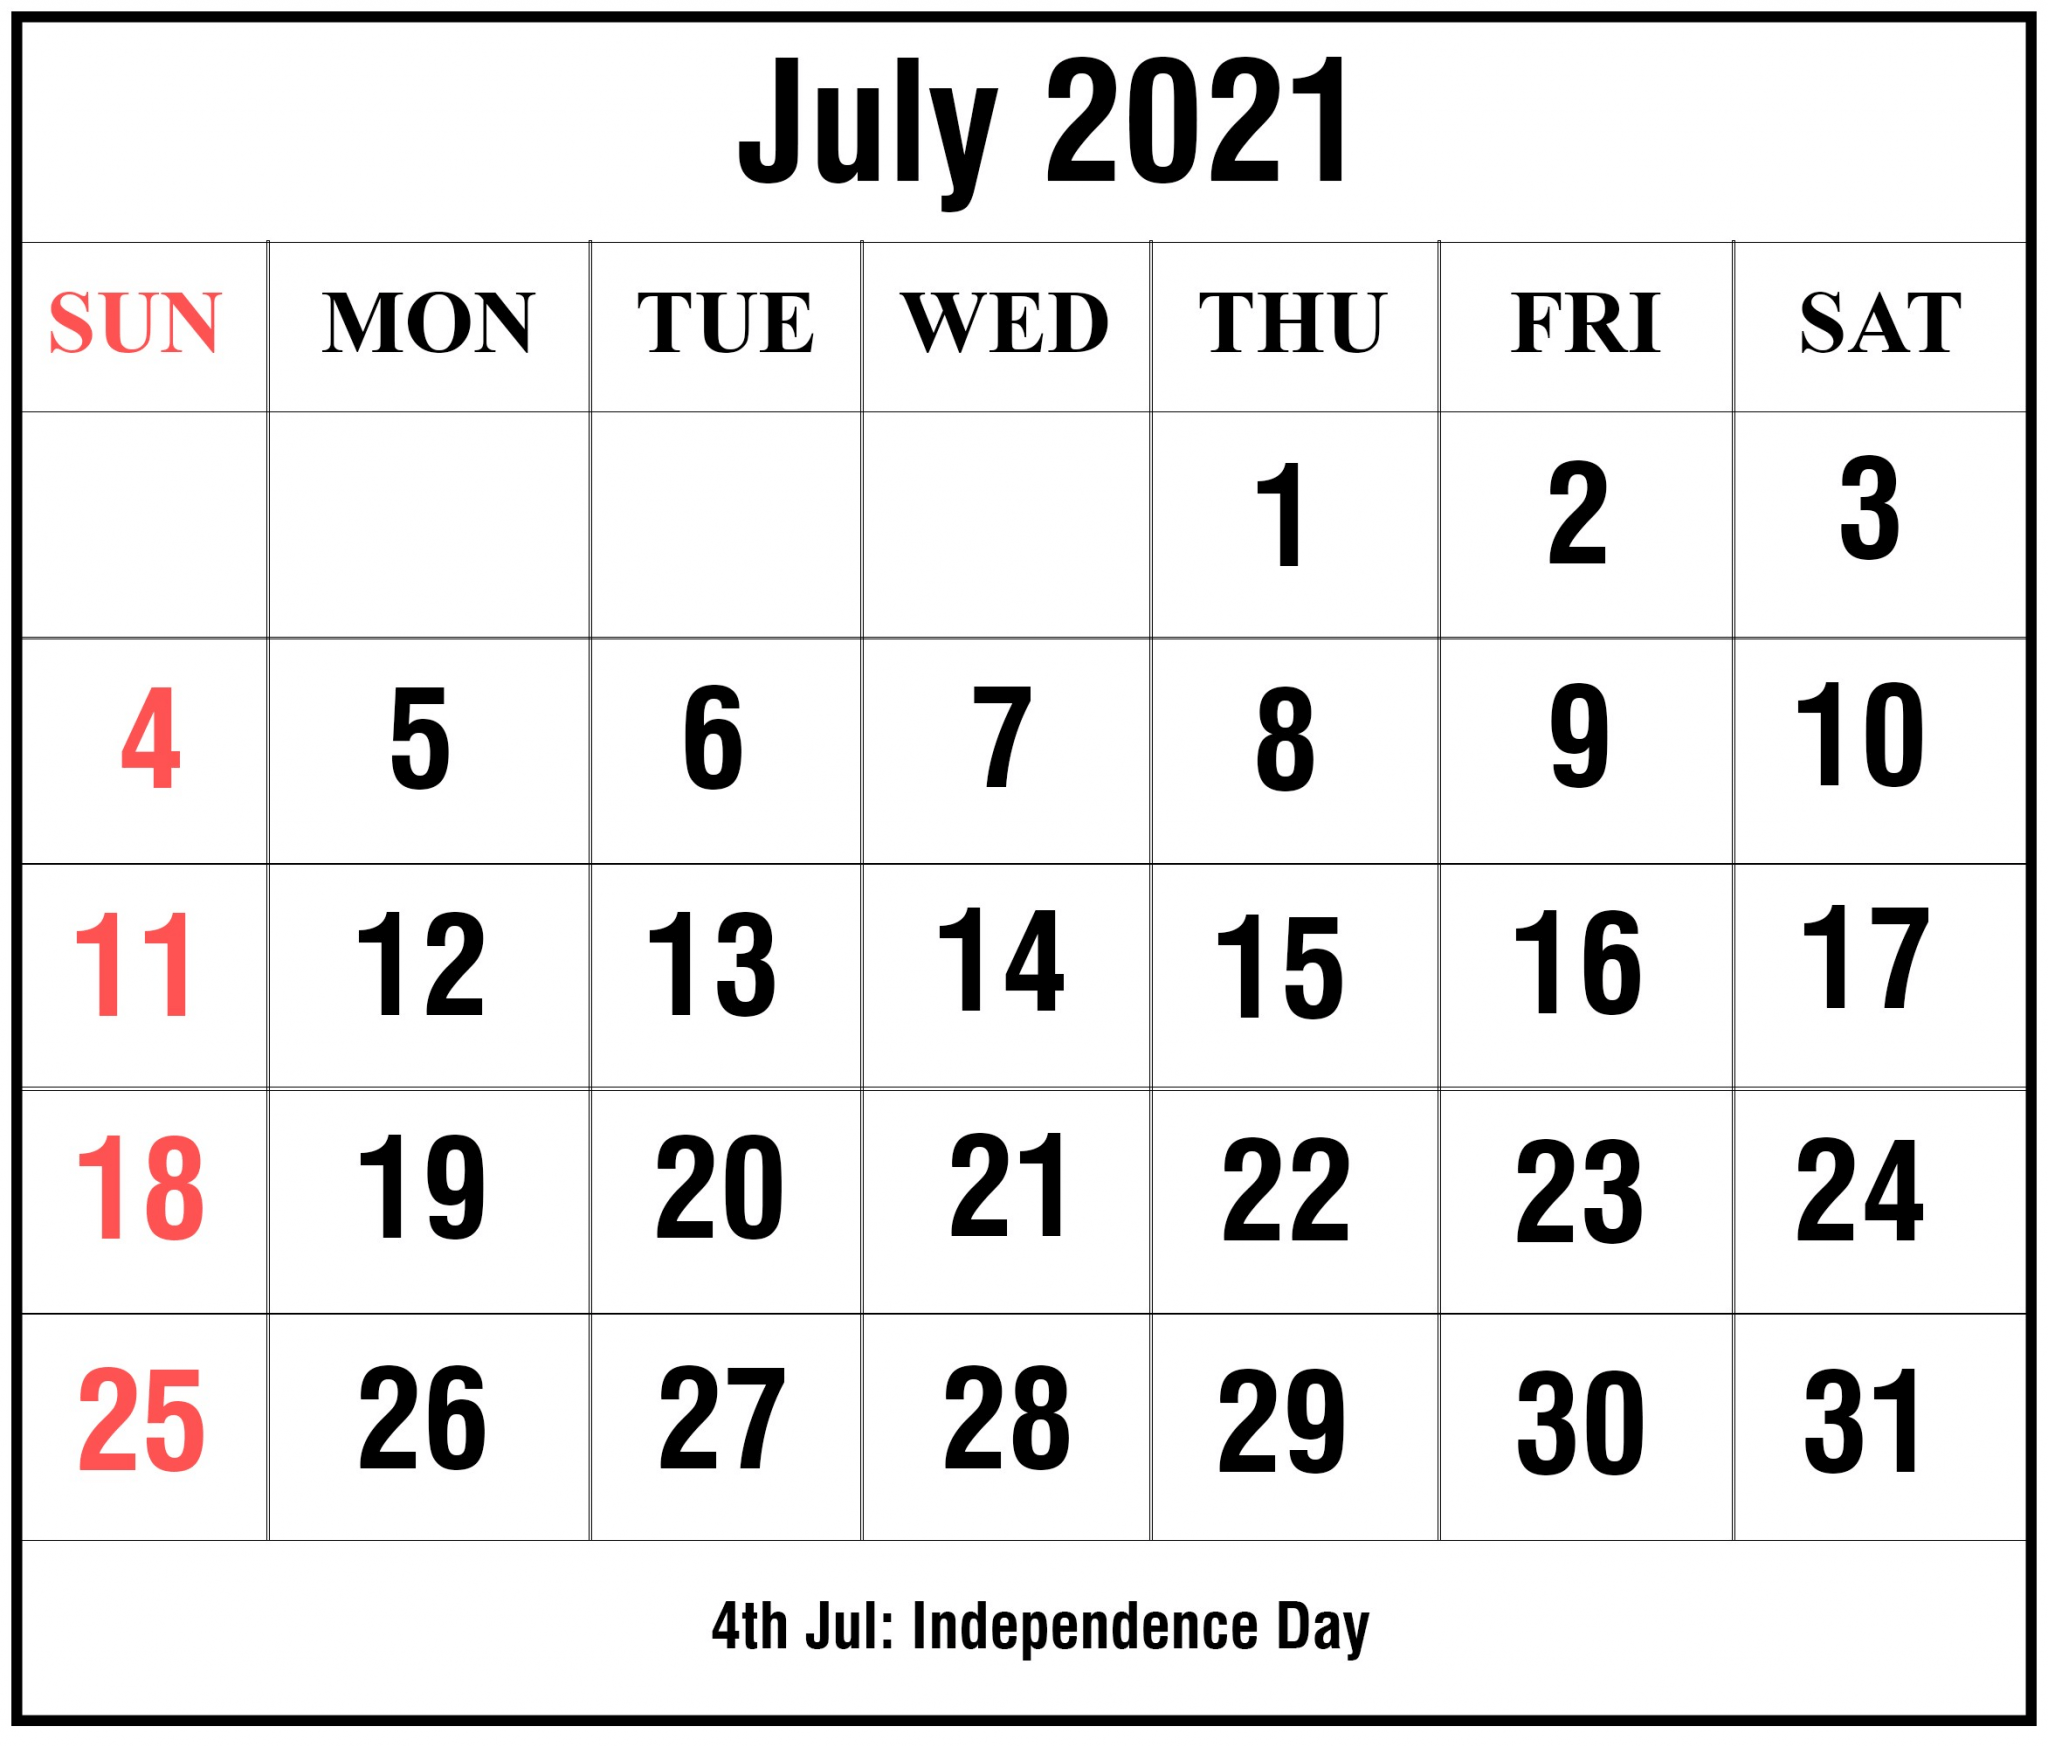 2021 July Calendar Editable with Holidays